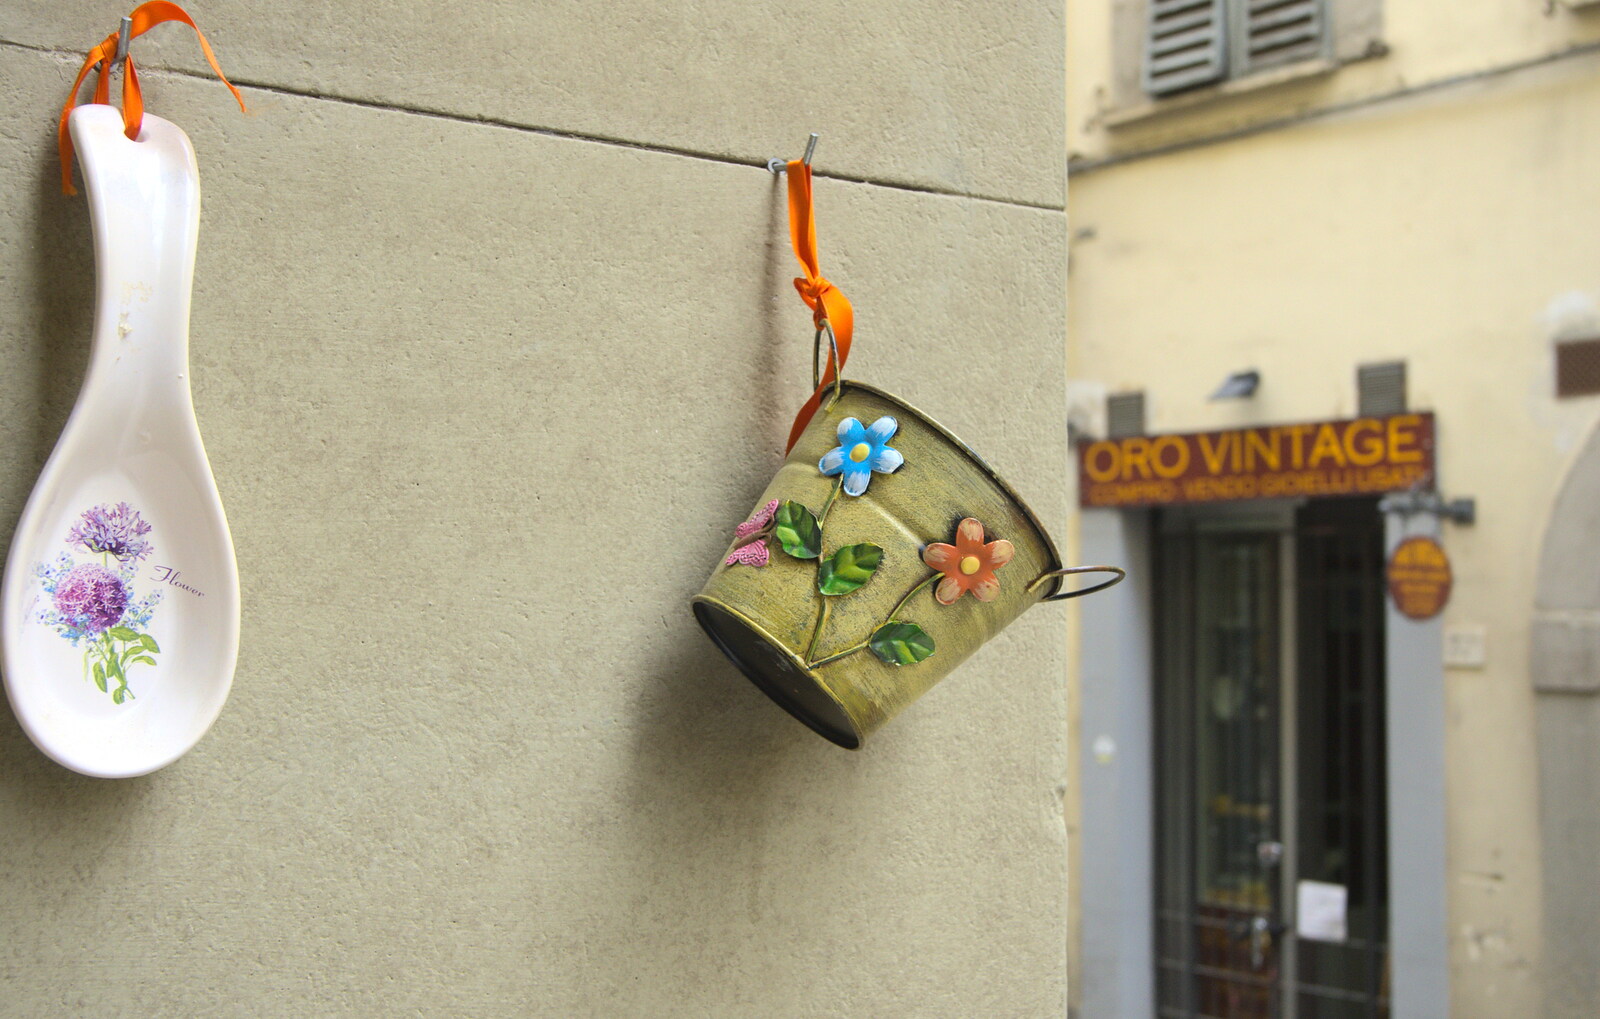 Marconi, Arezzo and the Sagra del Maccherone Festival, Battifolle, Tuscany - 9th June 2013: Hanging ornaments